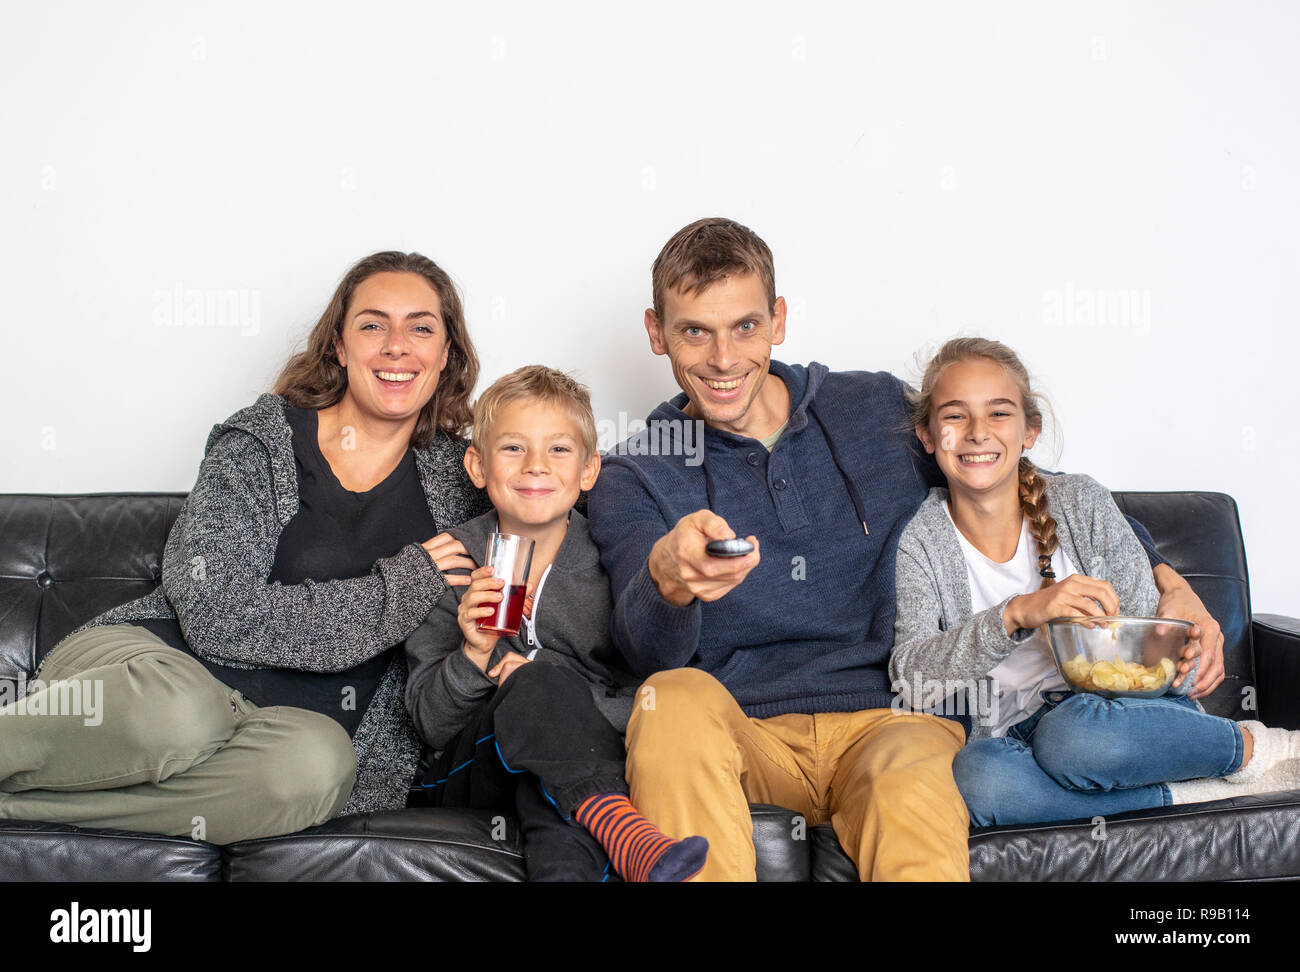 Famiglia giovane guardando la TV in ambienti chiusi. Vista frontale delle persone sedute sul divano guardando la televisione. Foto Stock